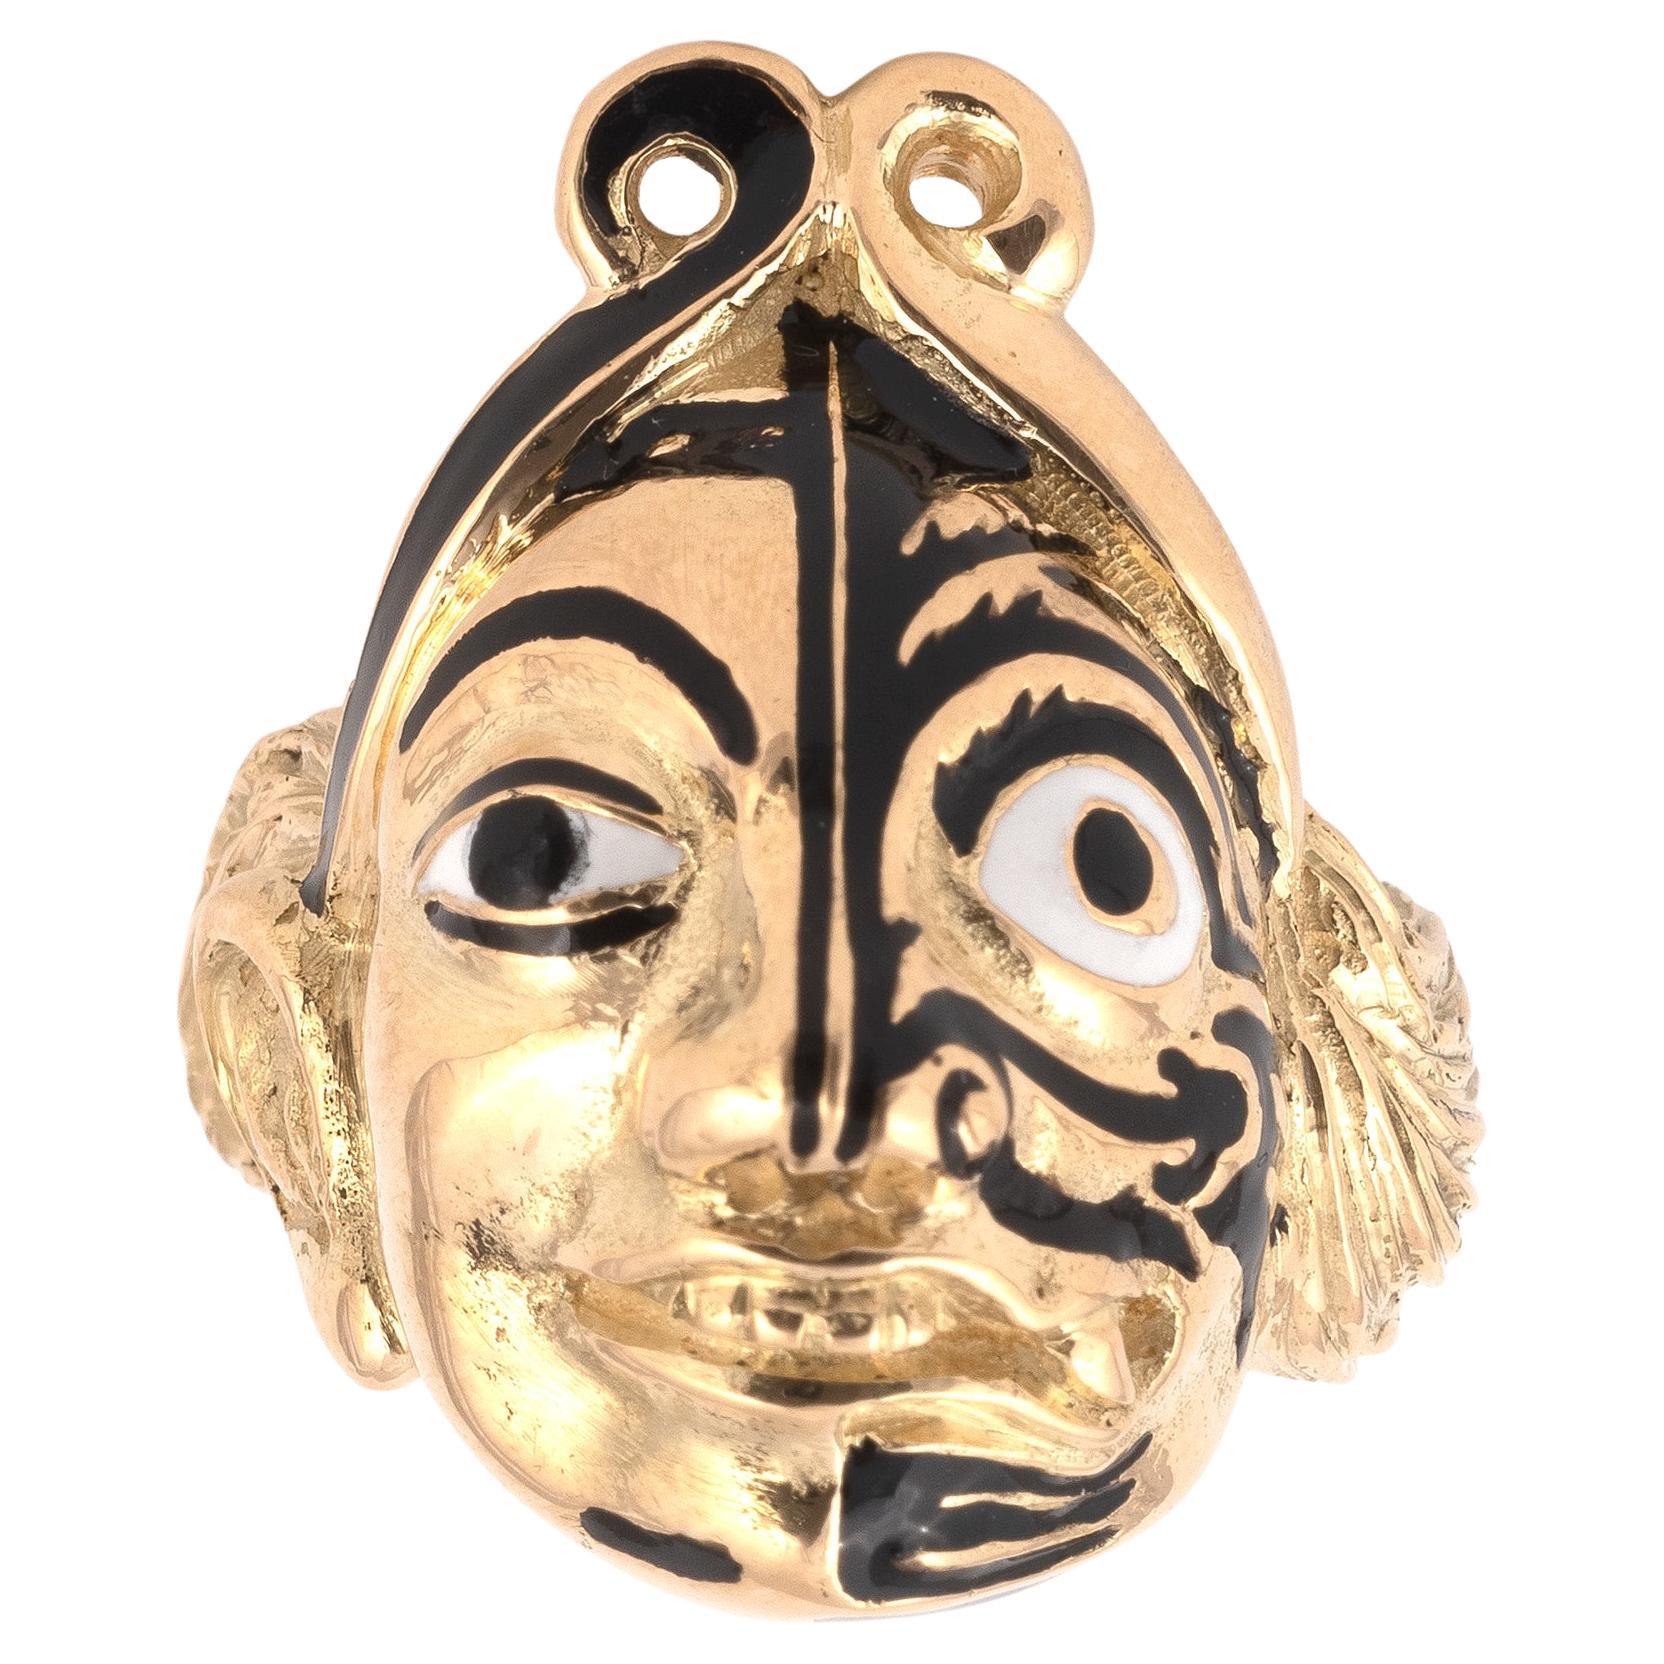 Chinesischer Theatermaske-Ring aus 18 Karat Gold und schwarz-weißer Emaille